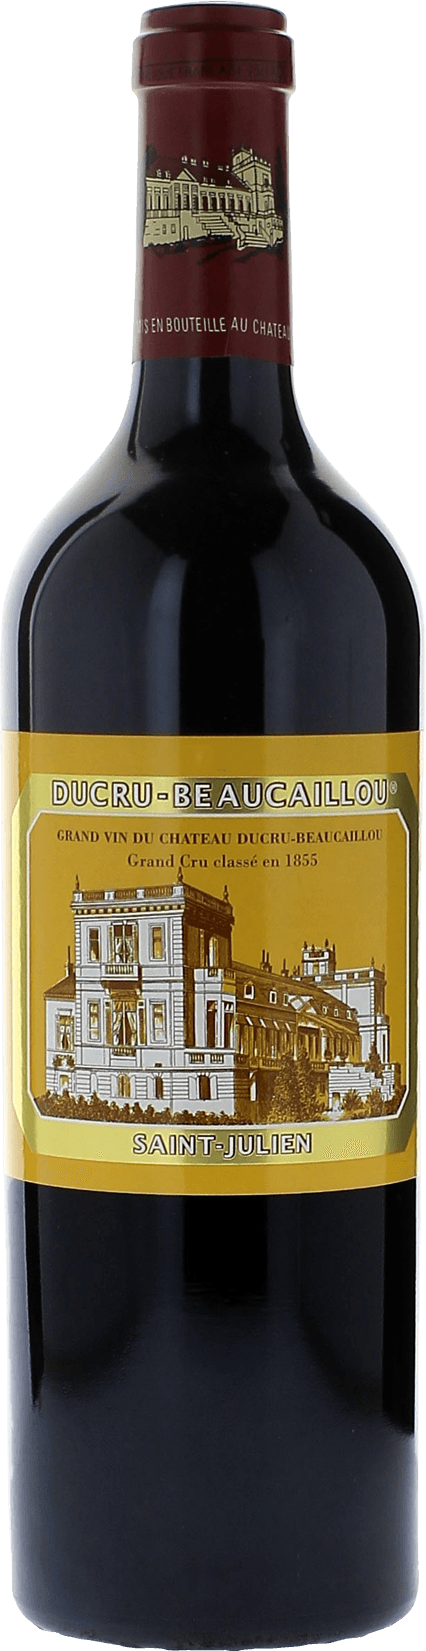 Ducru beaucaillou 1998 2me Grand cru class Saint-Julien, Bordeaux rouge